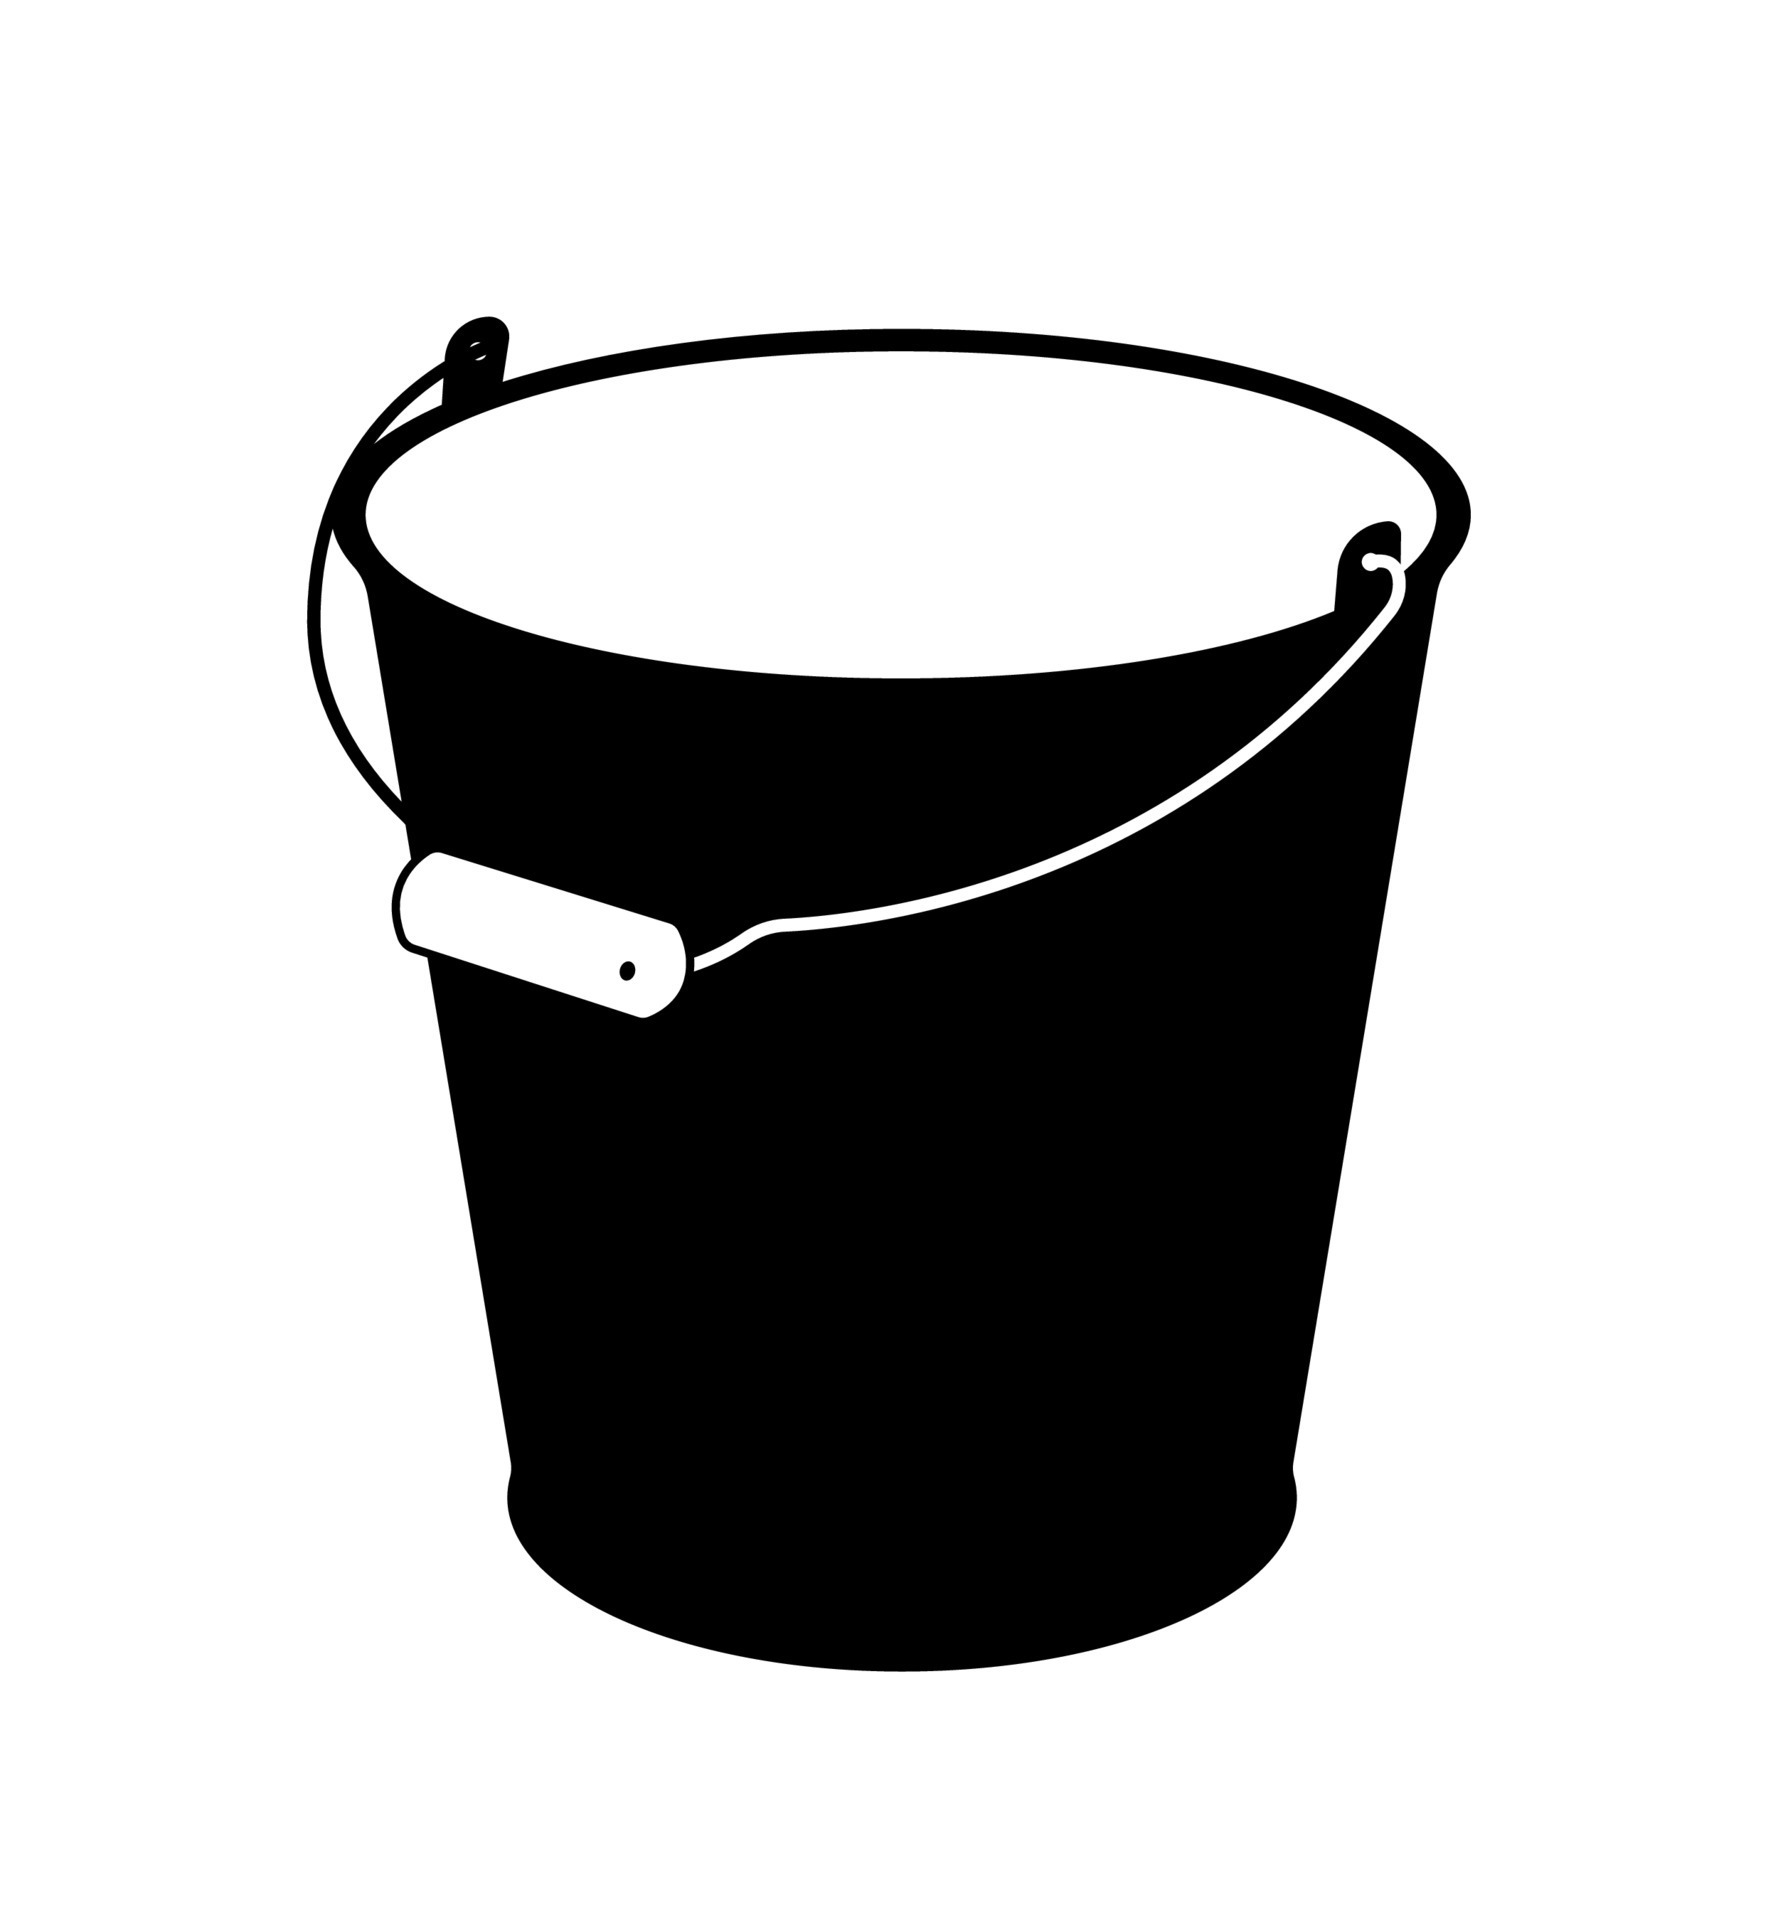 Steel Bucket Silhouette, Open Top Container Garden Tool Illustration  12733163 Vector Art at Vecteezy